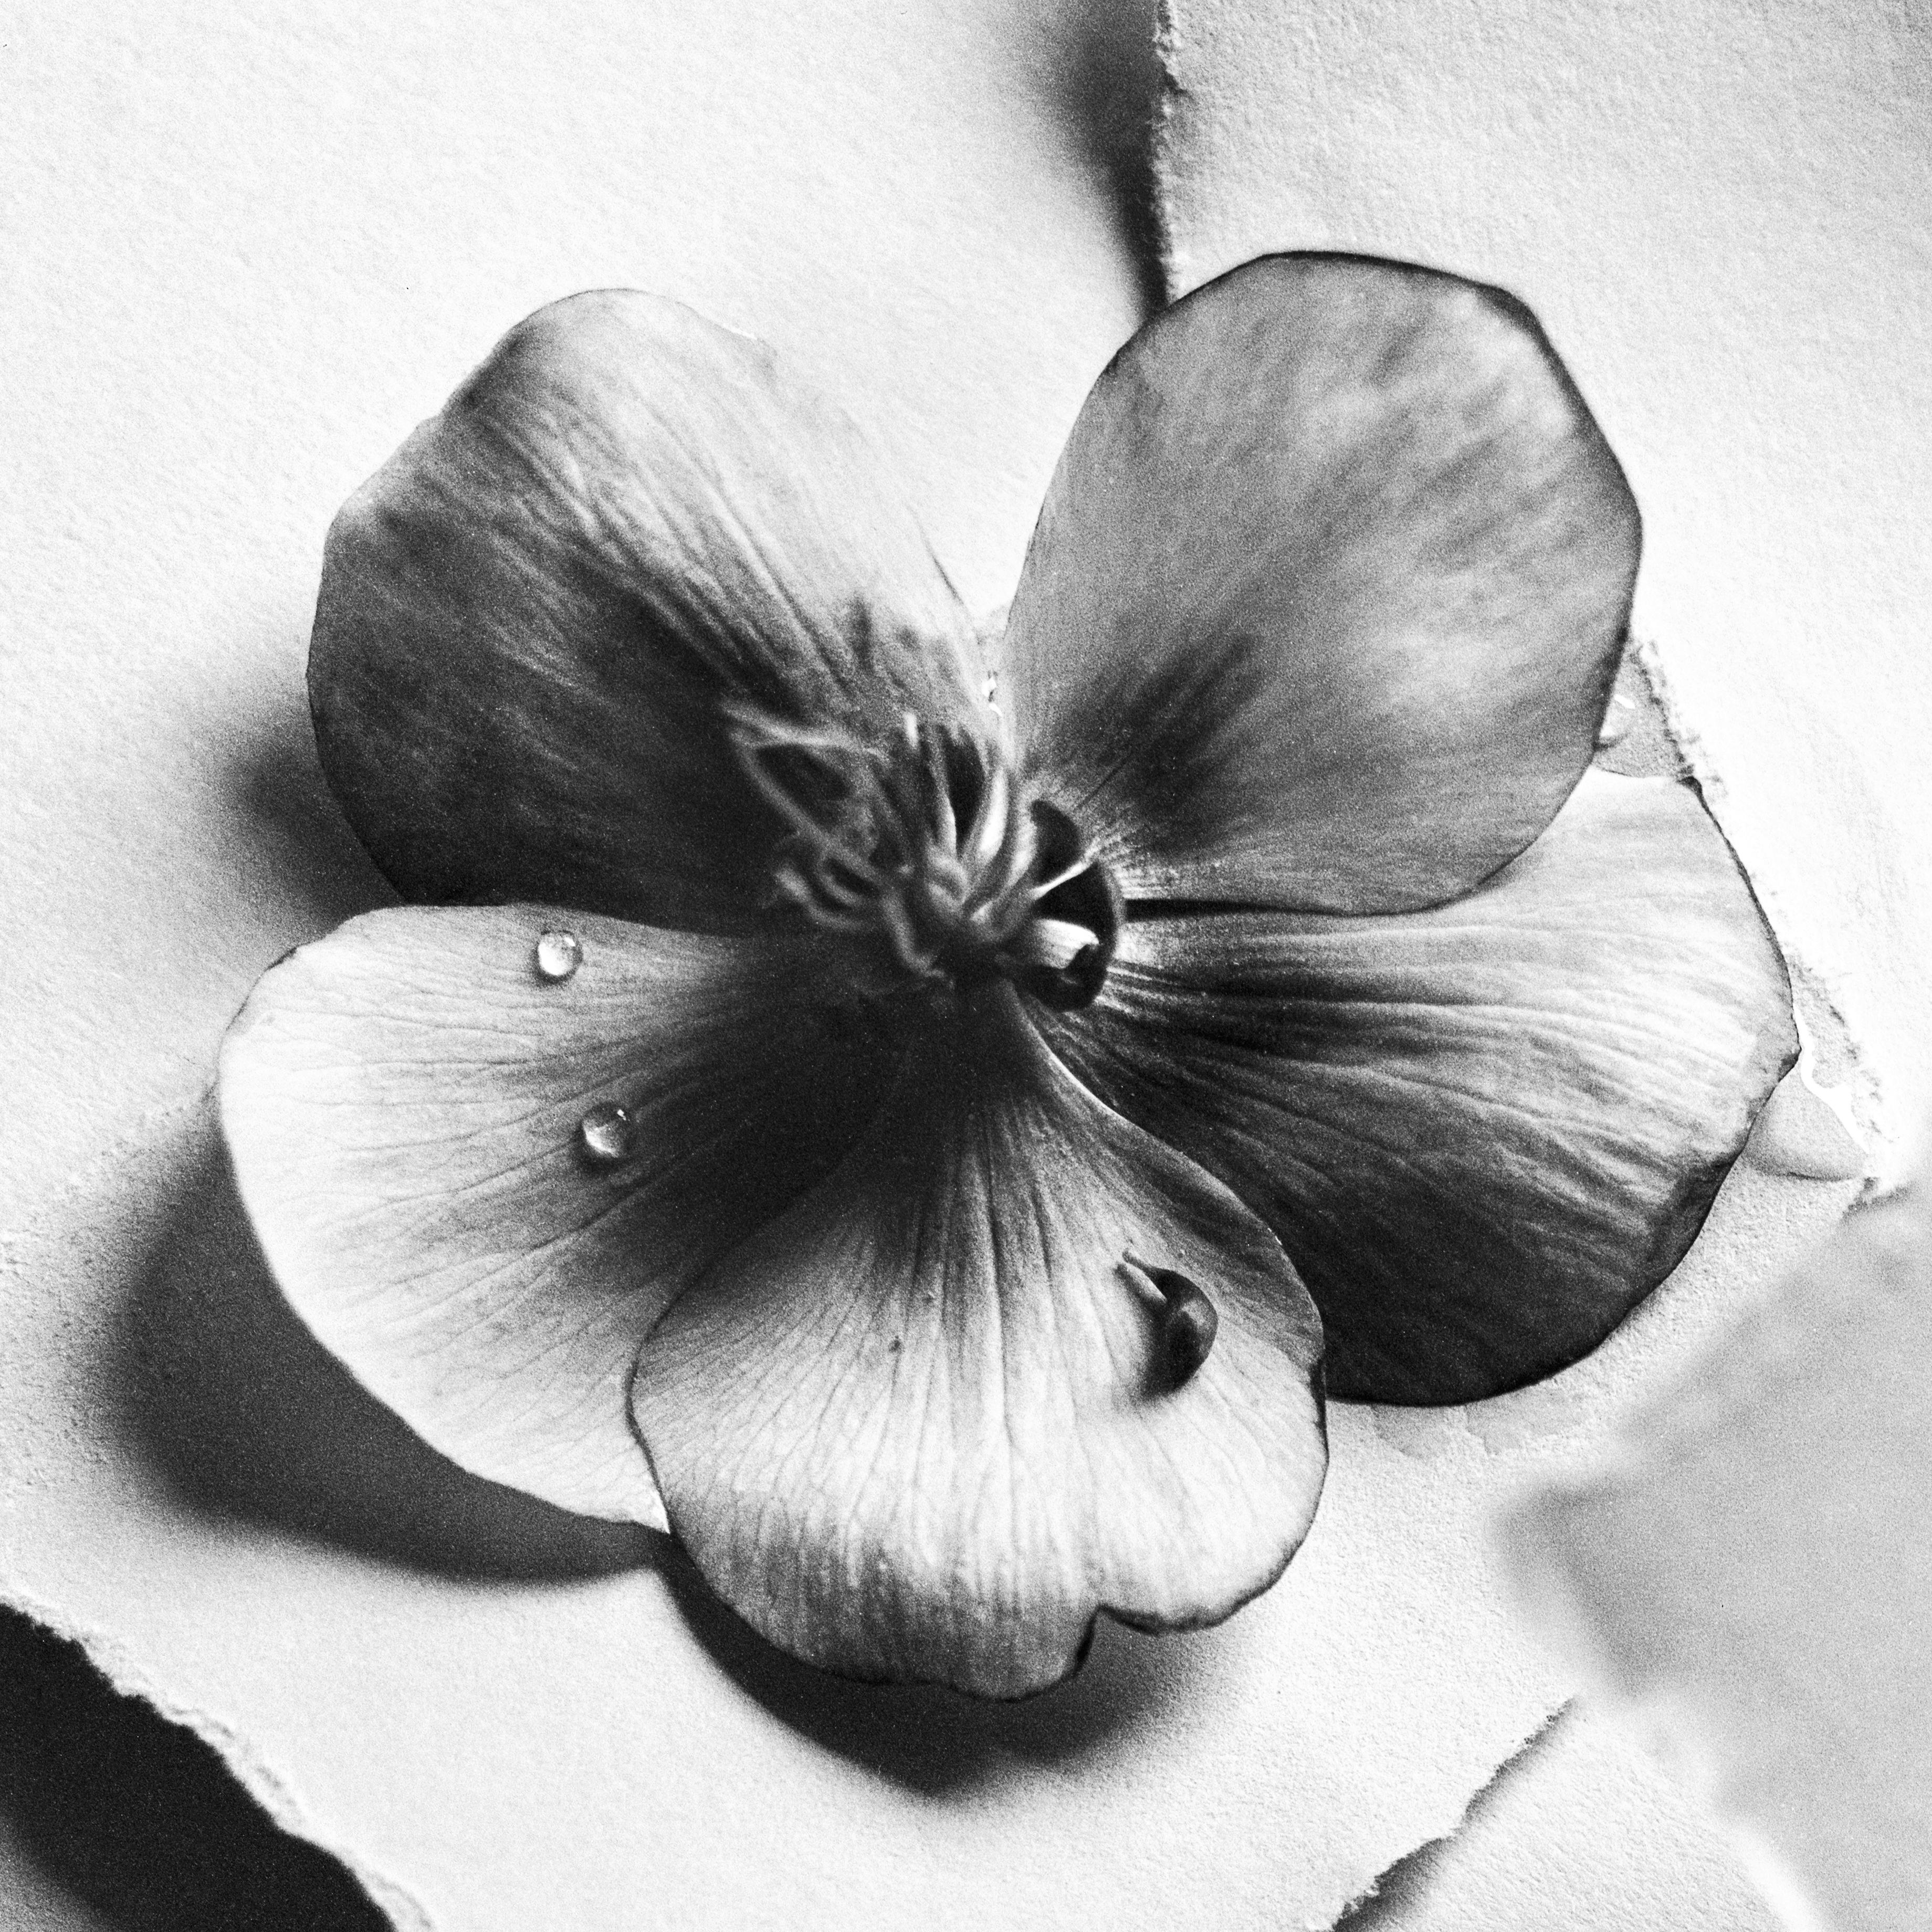 Schwarze Hellebore Nr.4 – Schwarz-Weiß-Blumenfotografie in Schwarz, limitierte Auflage 20 Stück